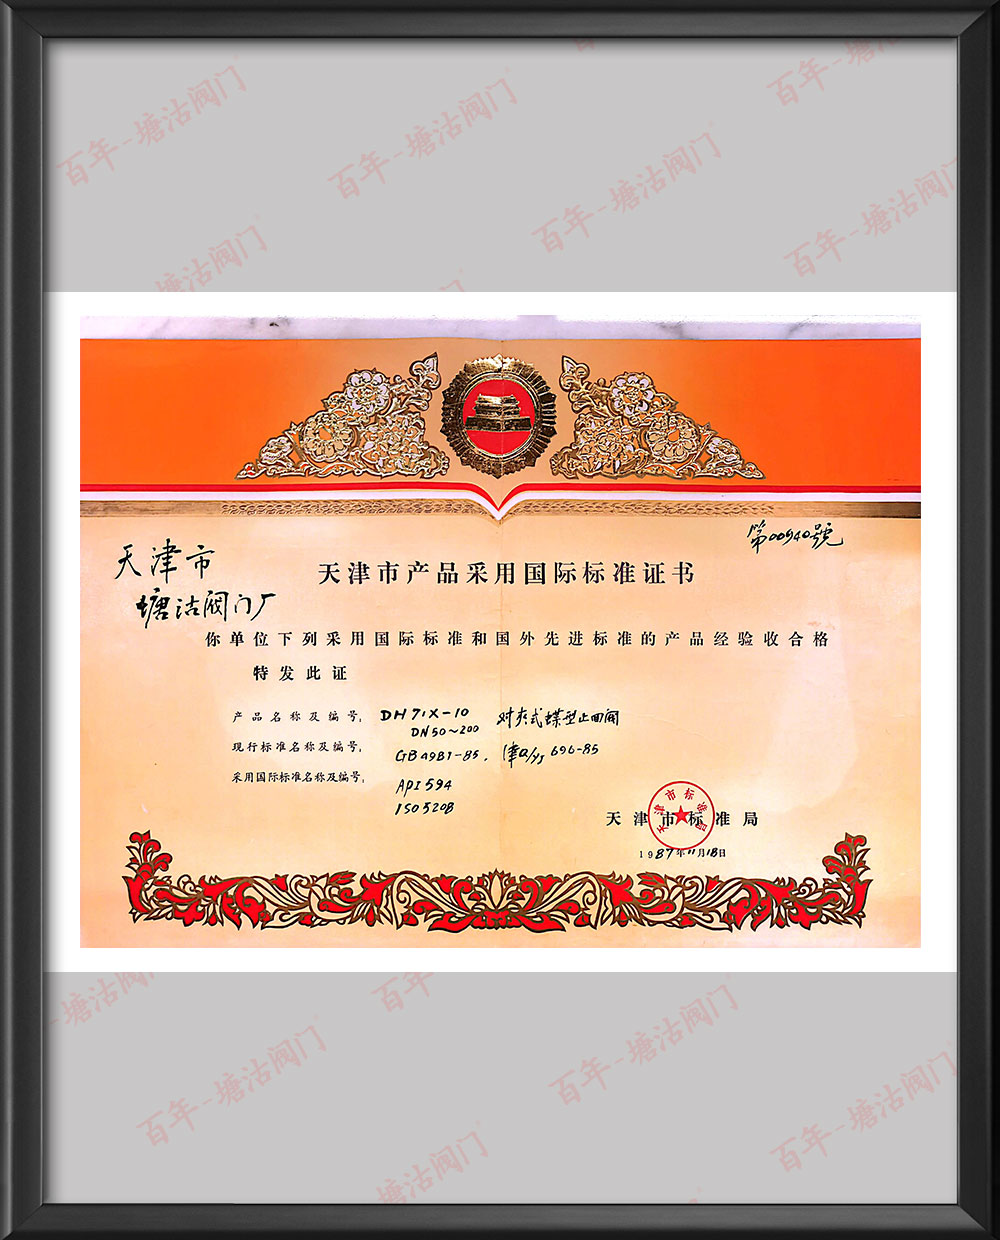 1987年對夾式蝶型止回閥天津市產品采用國際標準證書